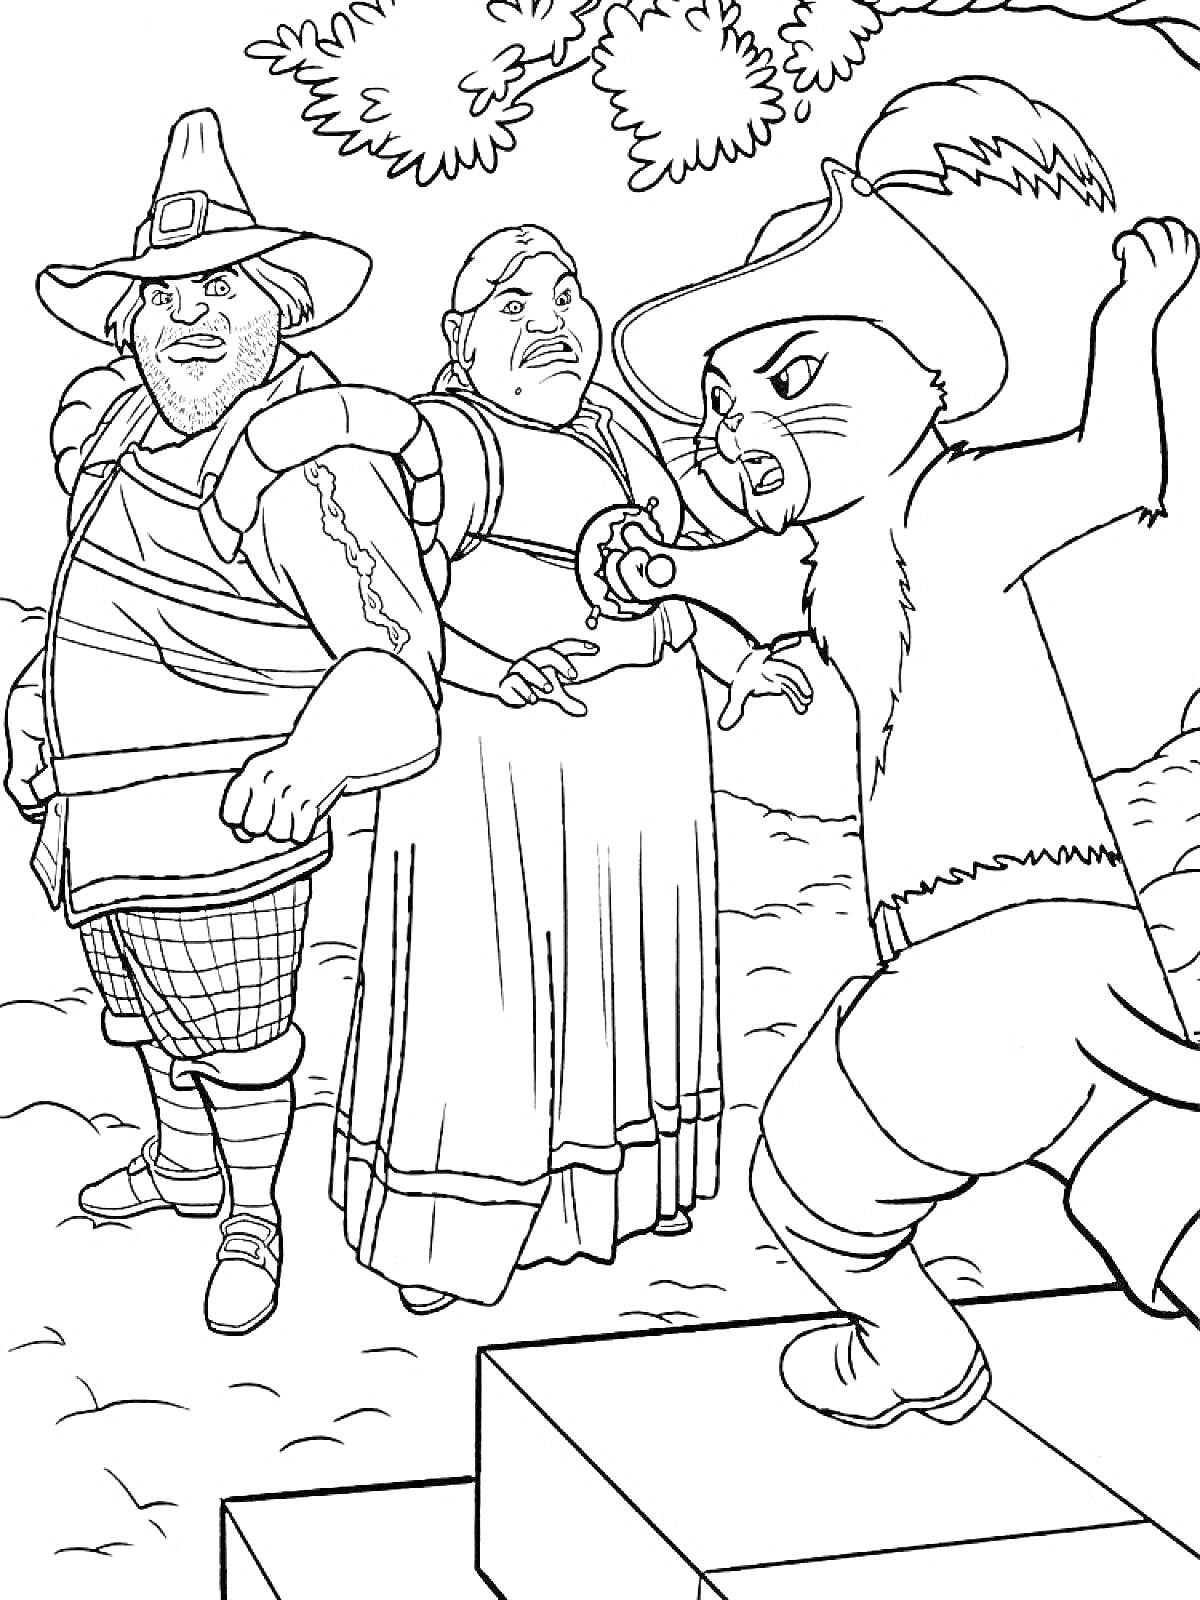 Раскраска Кот в сапогах с шпагои на фоне двух людей (рыцаря и женщины) и дерева